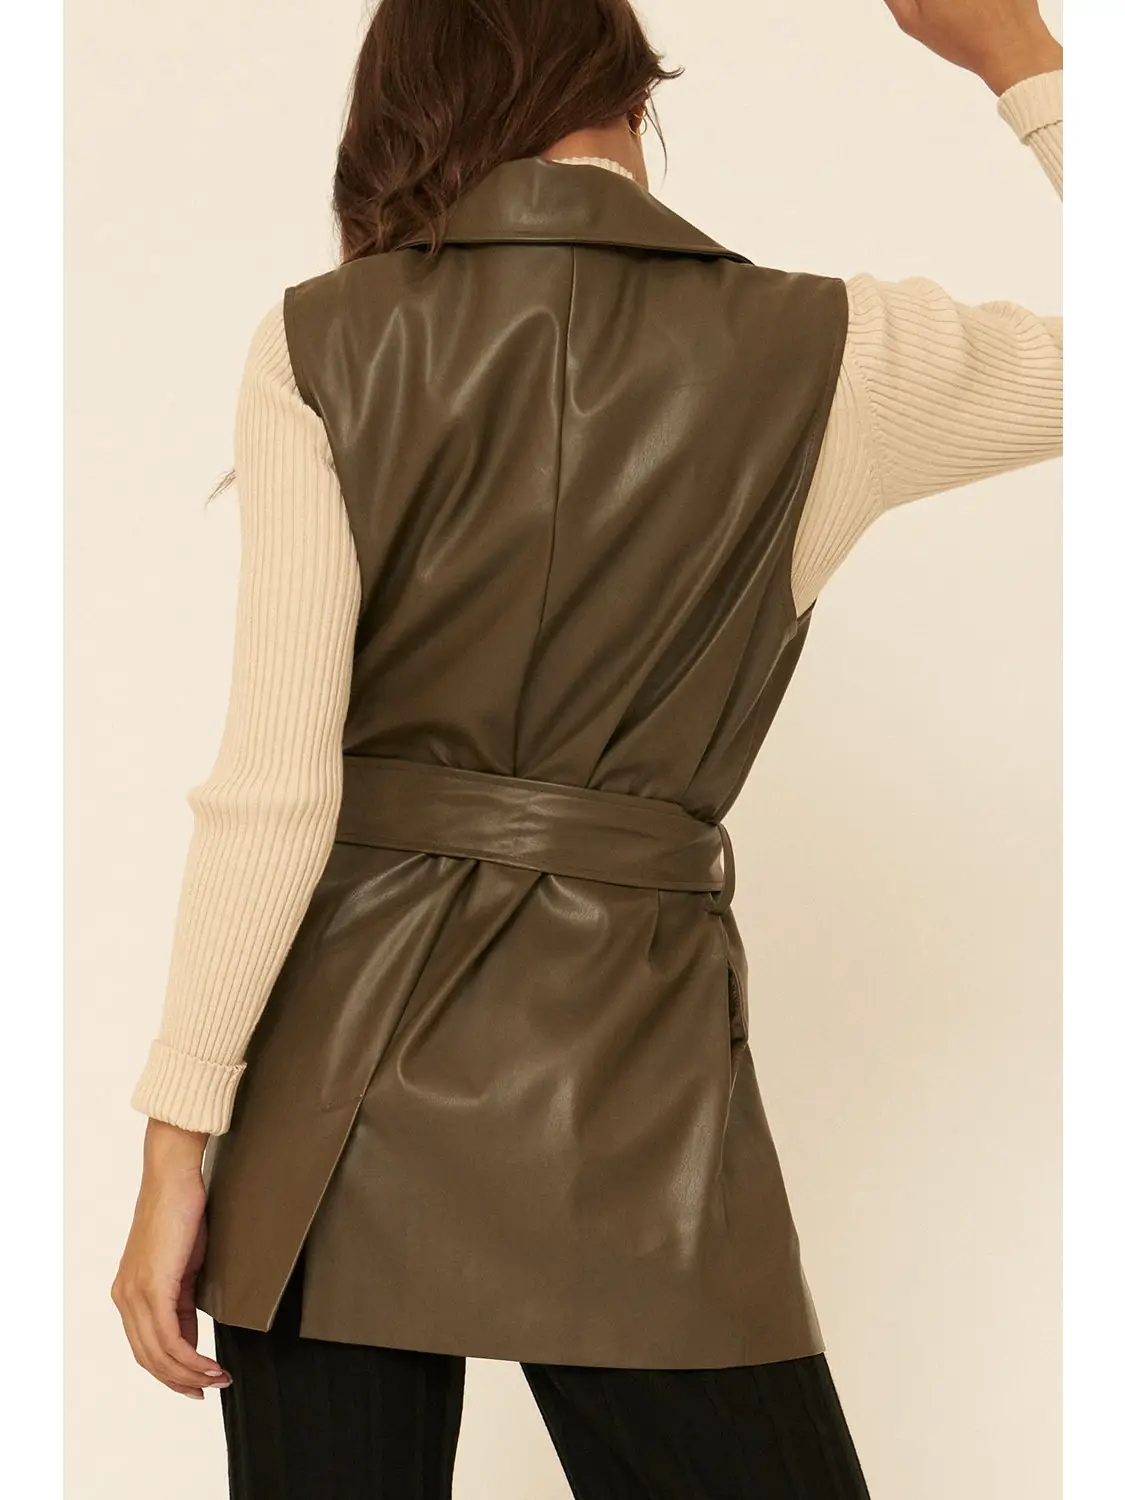 Olive Green Leather Vest